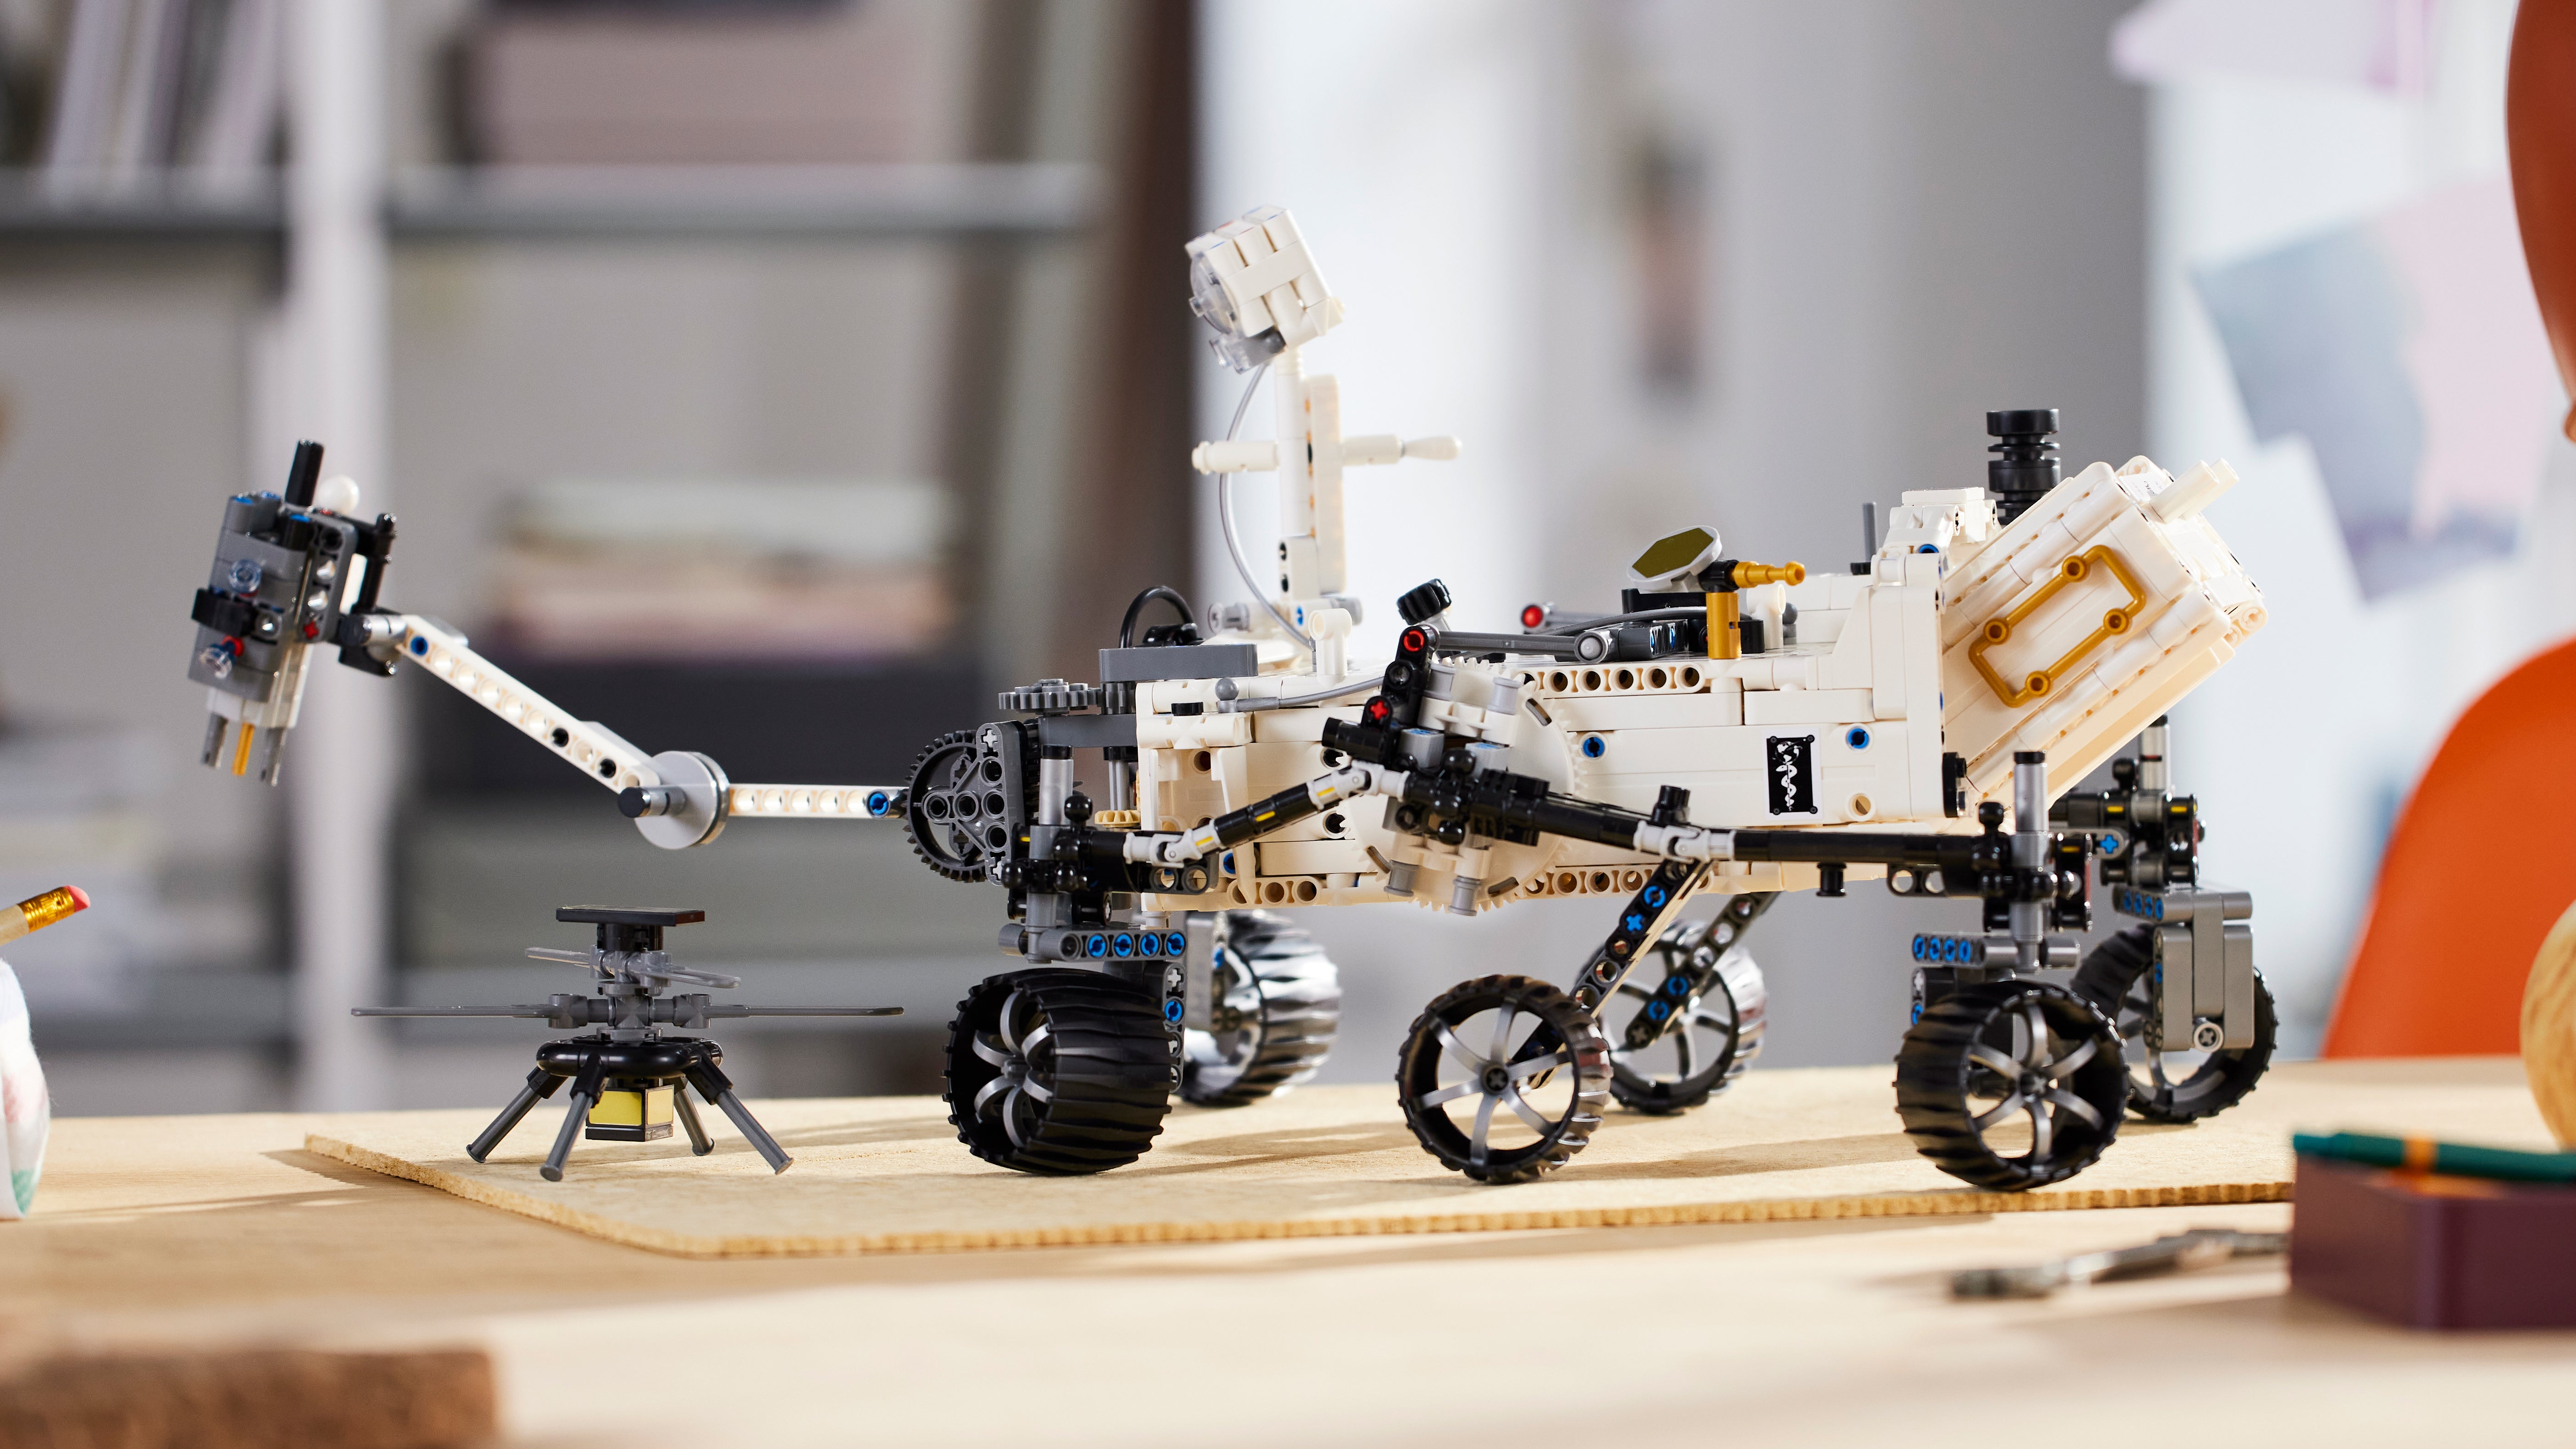 لقطة جانبية لنموذج Lego Mars Rover المثابرة ، مع هليكوبتر Ingenuity هبطت بجوارها مباشرة.